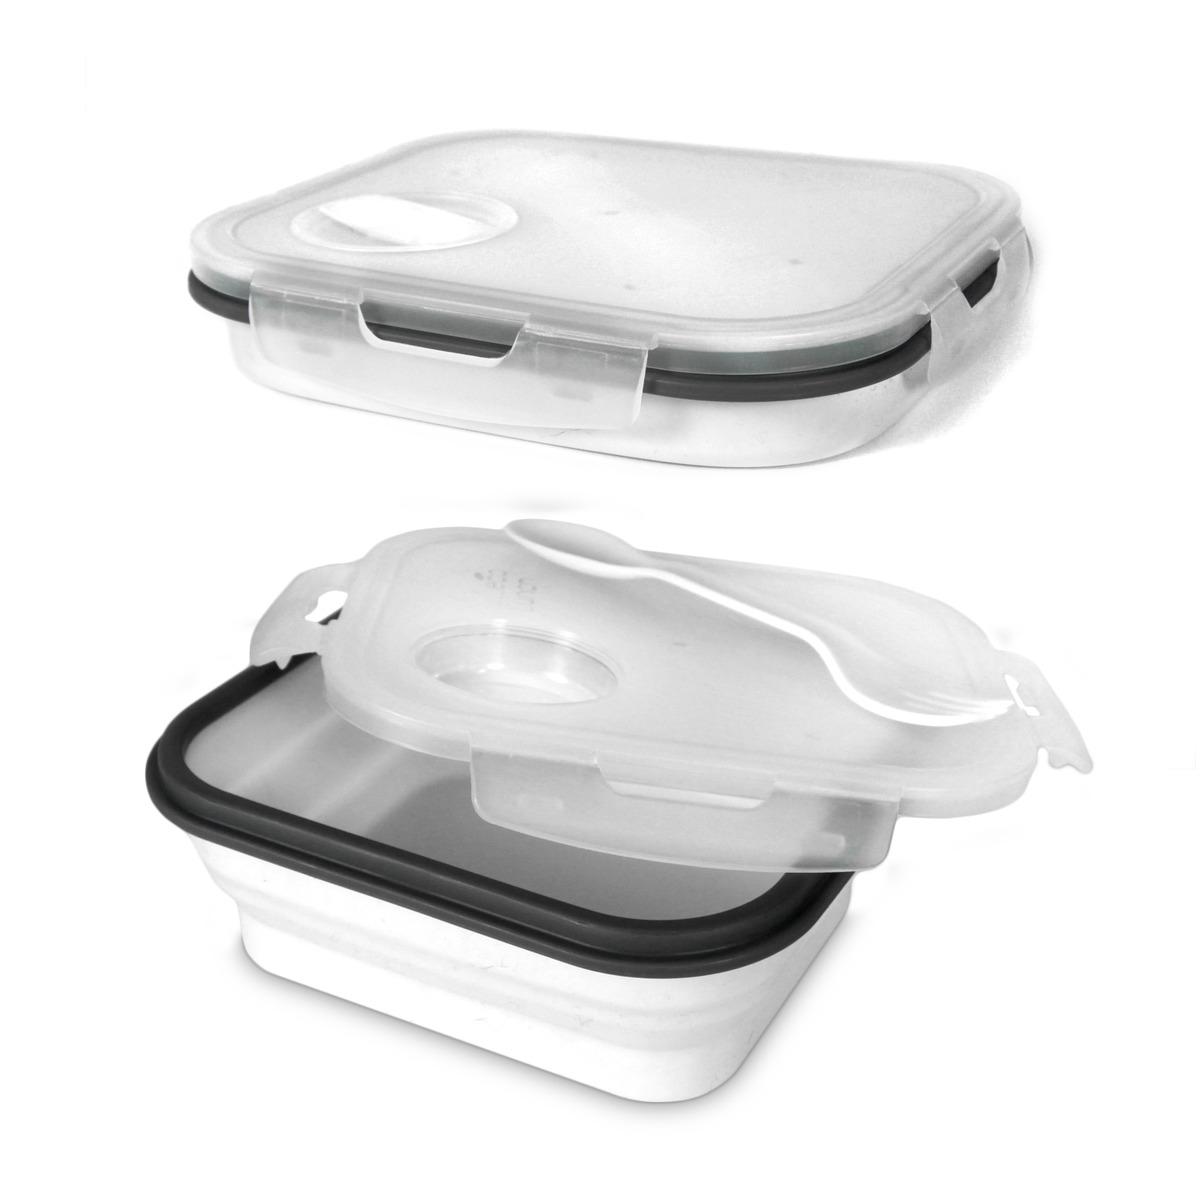 Lunch box rétractable avec couverts intégrés 80 cl - 19 x 16 cm - blanc